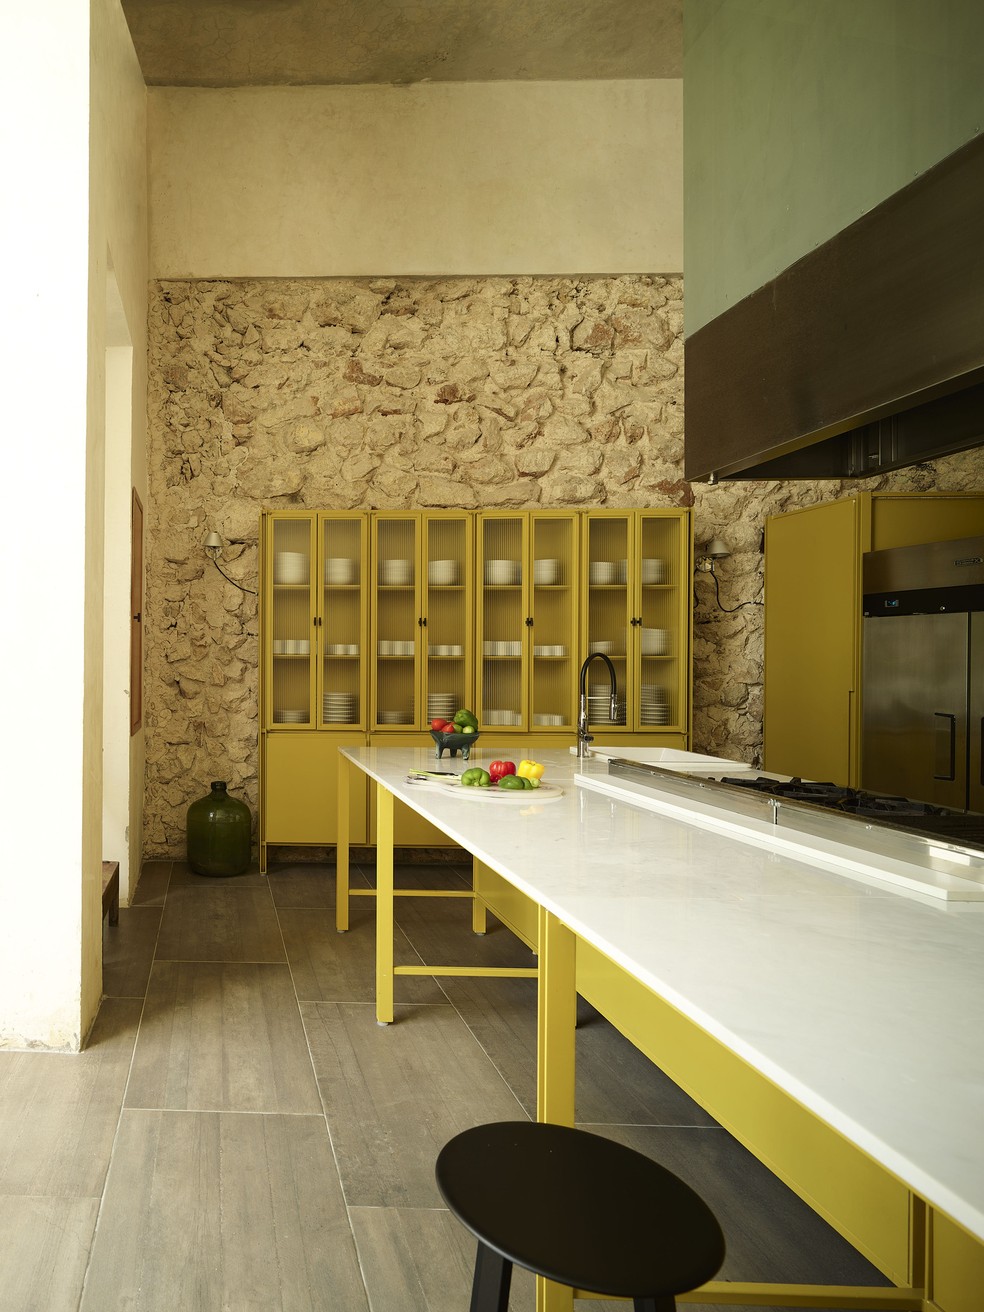 Décor do dia: cozinha amarela com estilo rústico — Foto: Fernando Marroquin